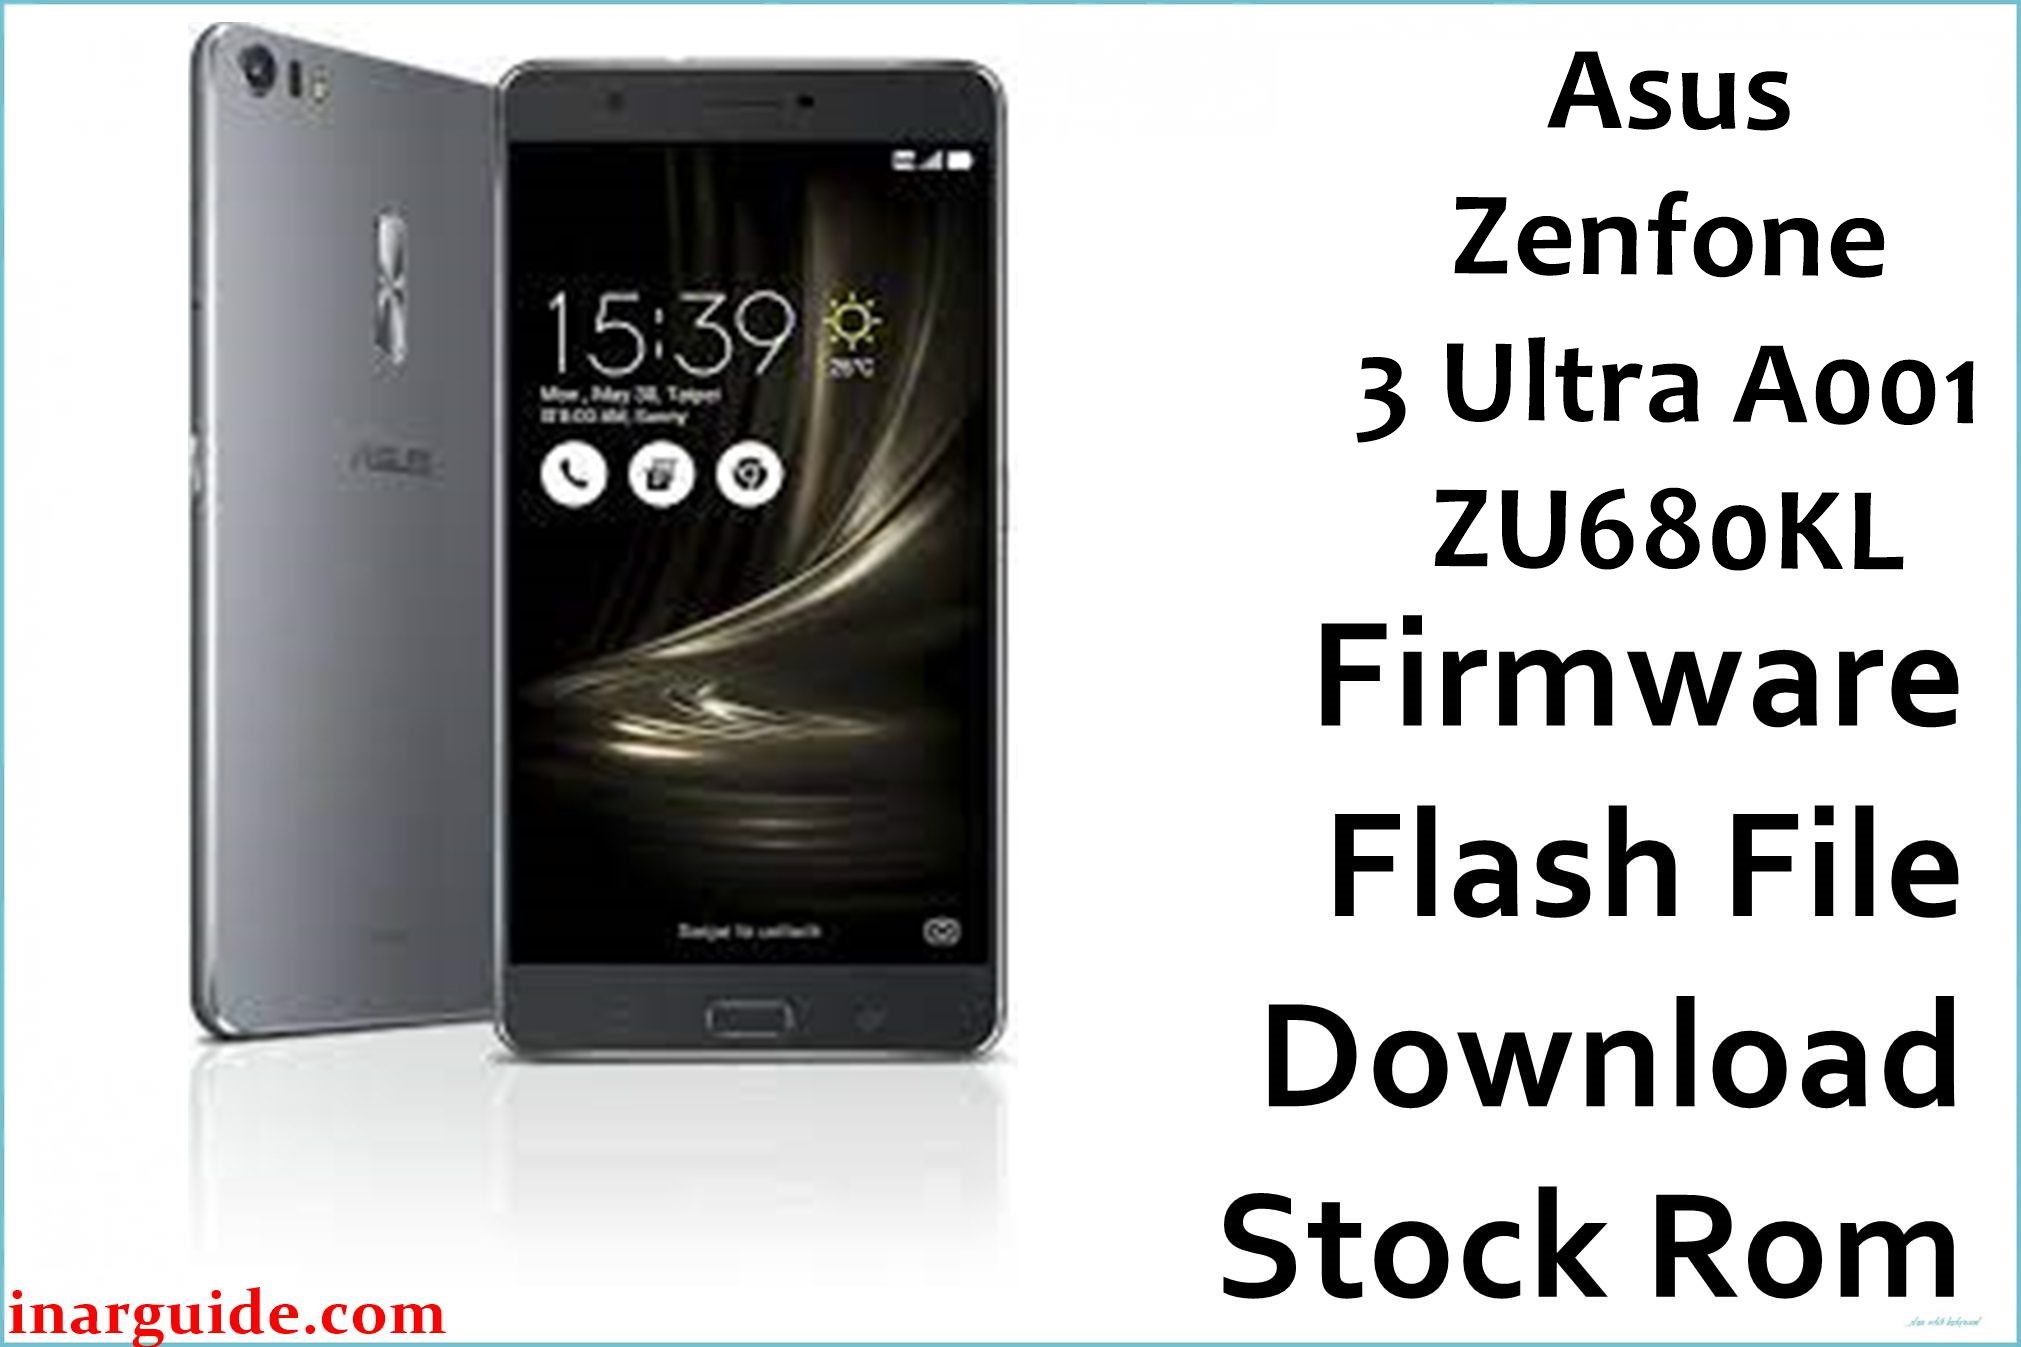 Asus Zenfone 3 Ultra A001 ZU680KL